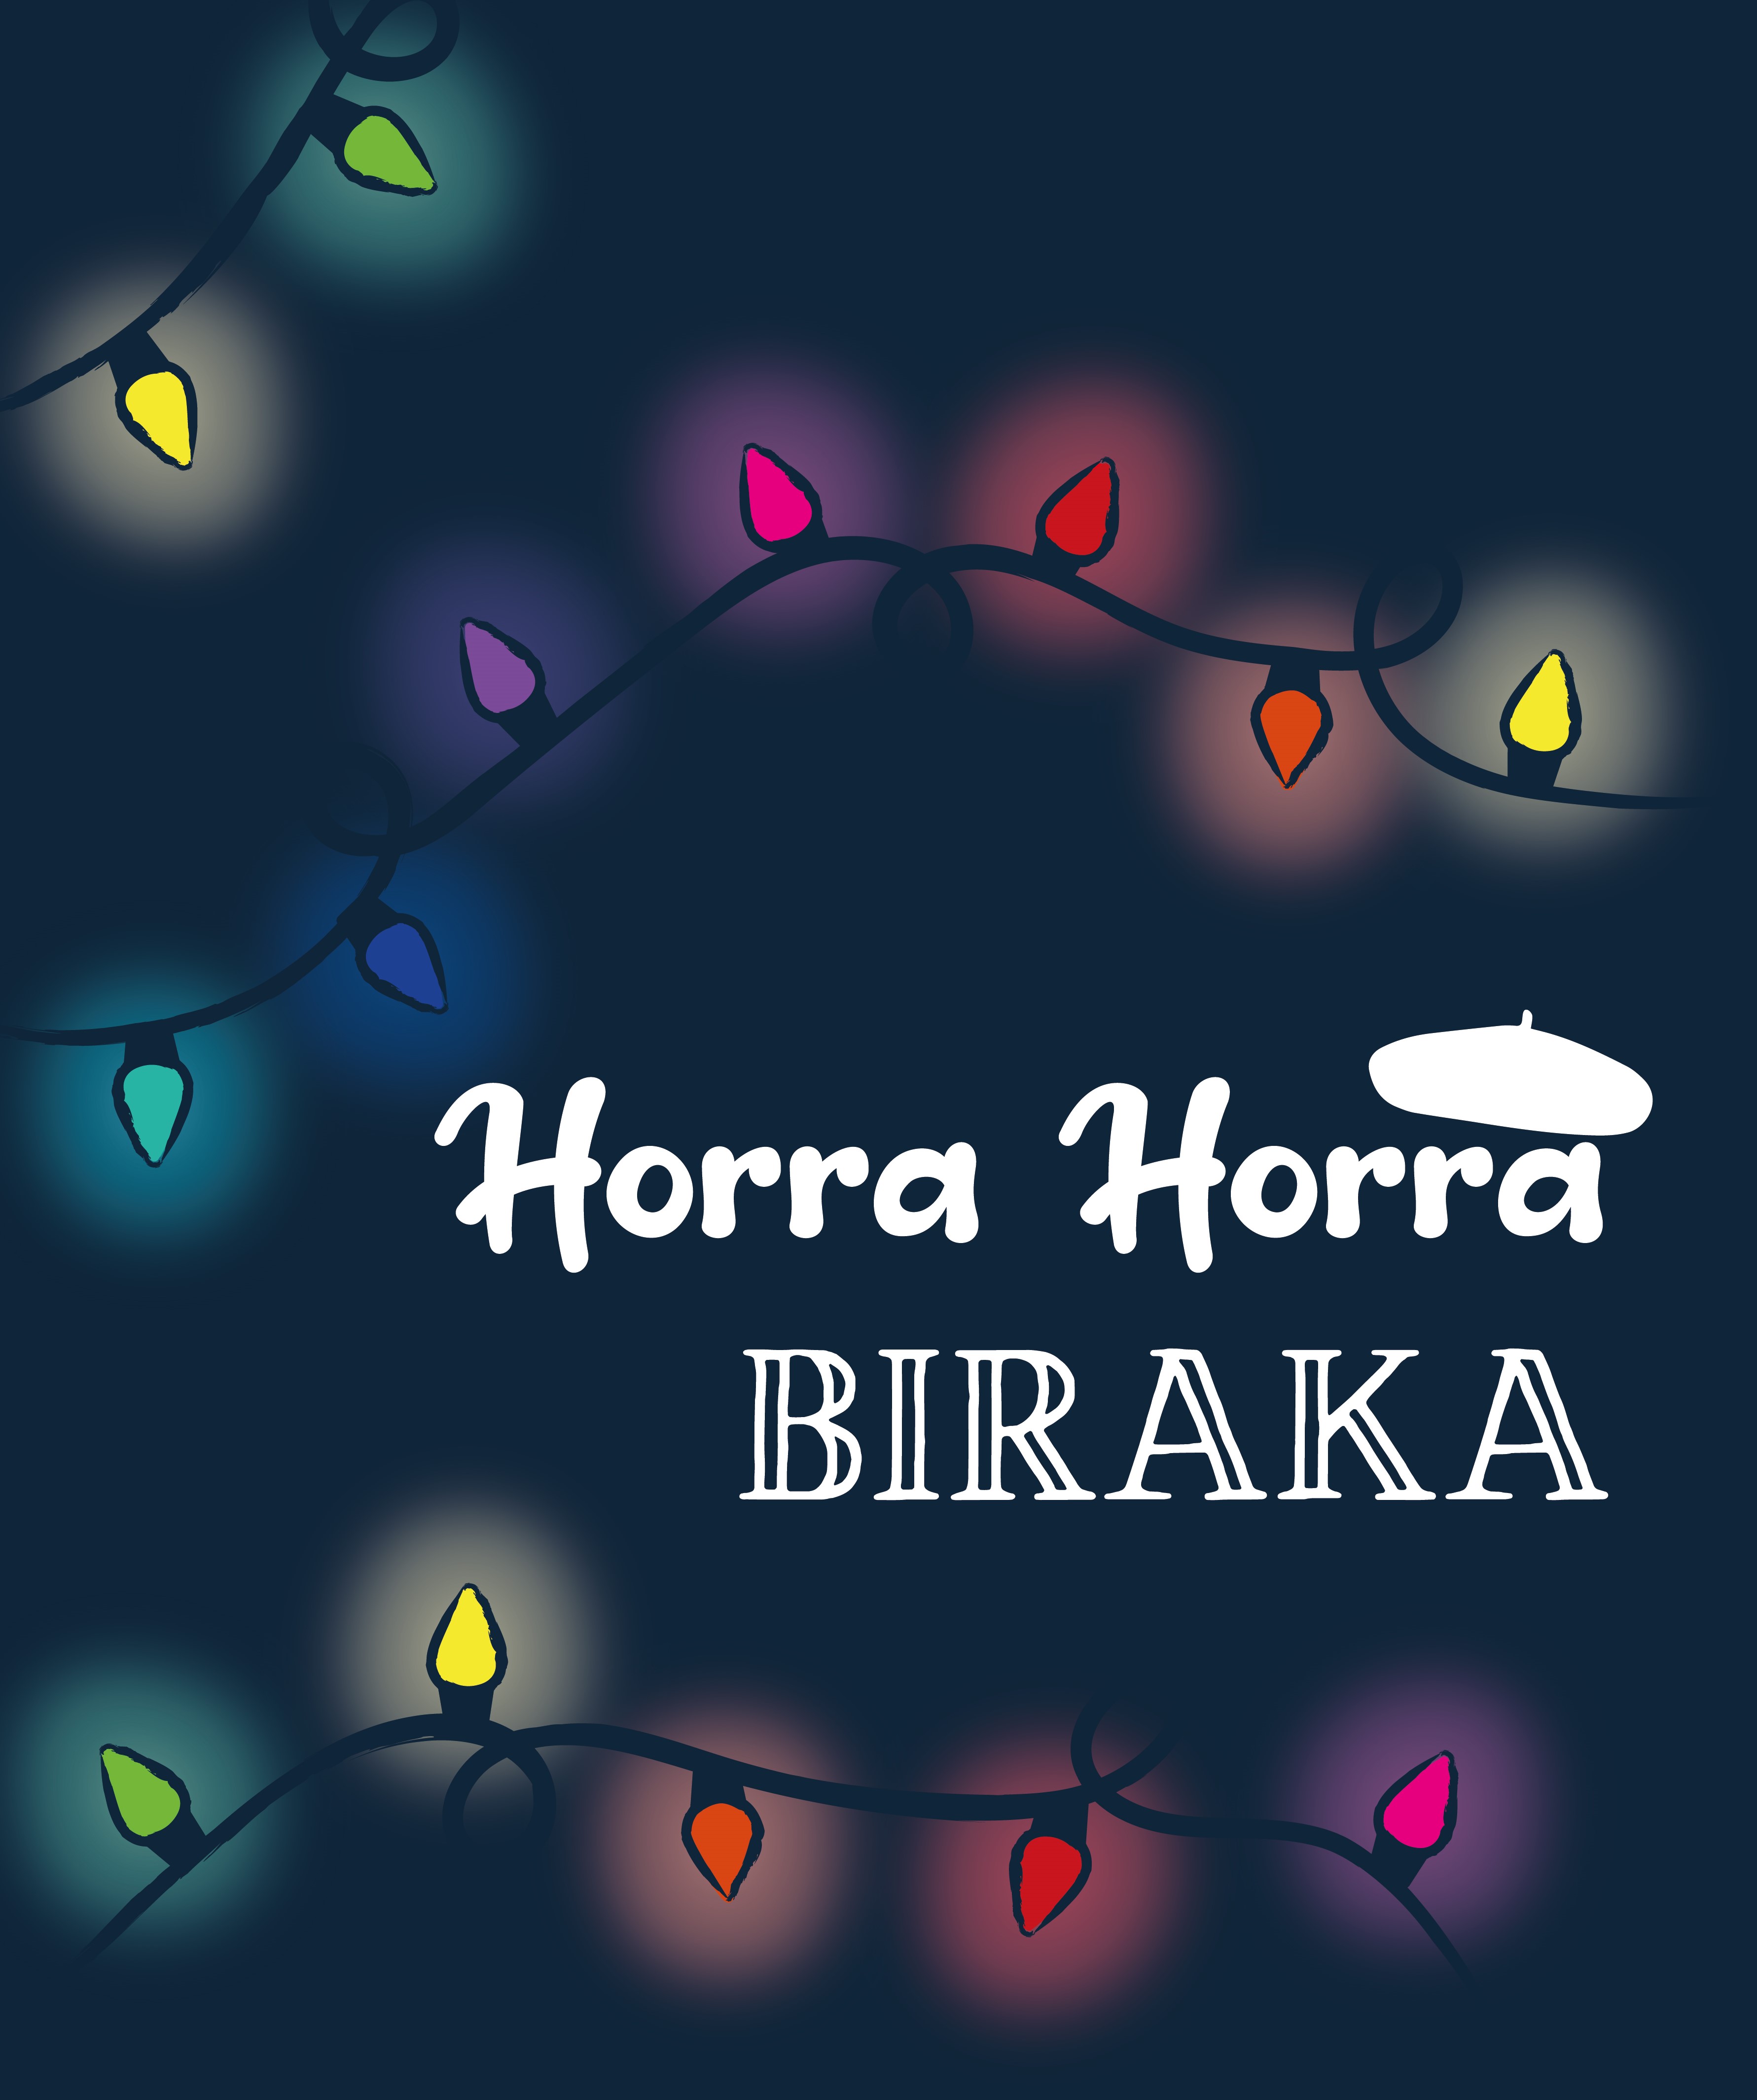 Horra, horra Biraka 